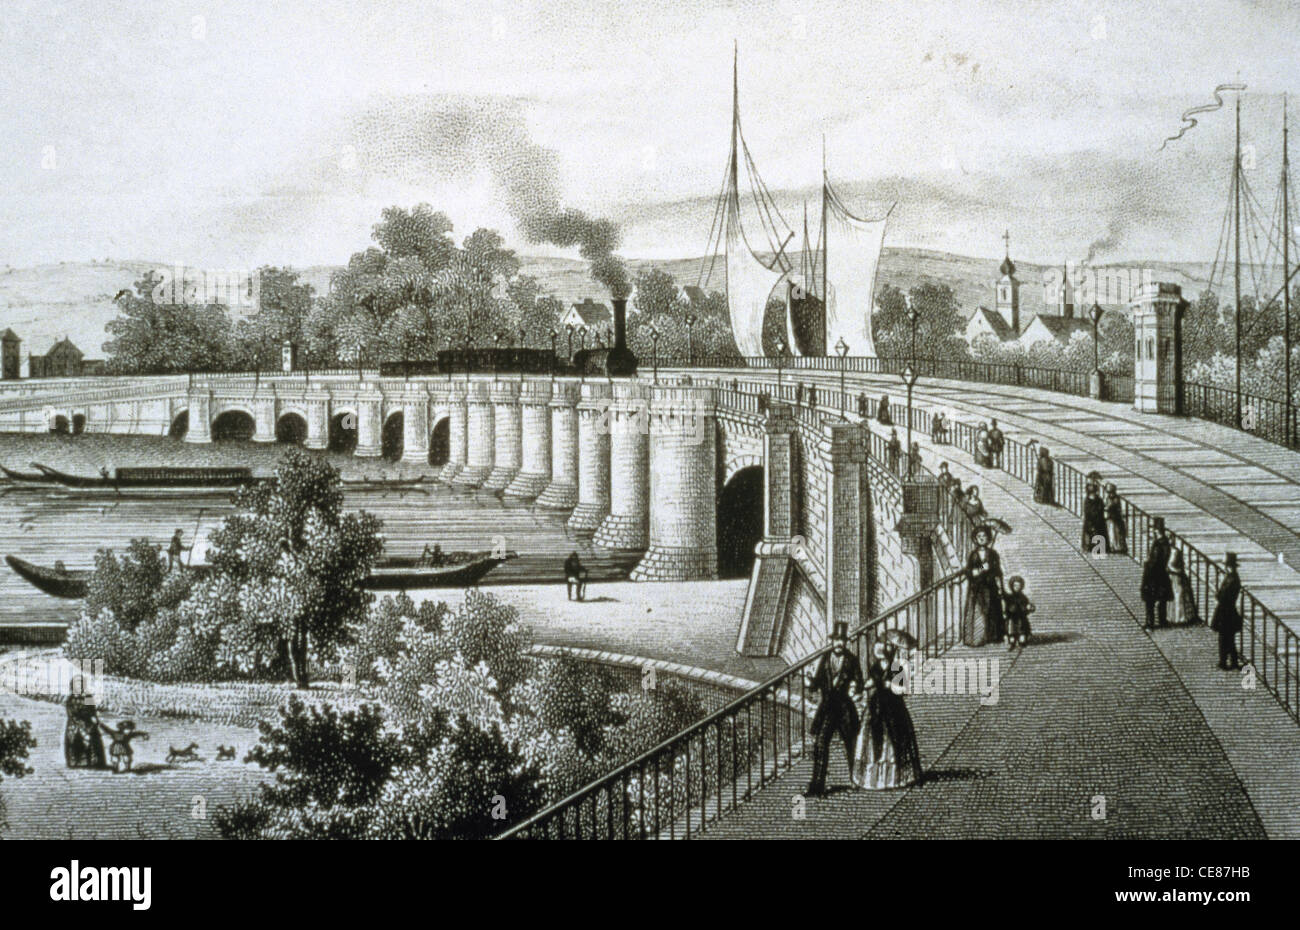 Unificazione della Germania (1815-1871). Il tedesco di unione doganale. 1834. Primo grande ponte ferroviario a Dresda. Incisione in acciaio, 1850. Foto Stock